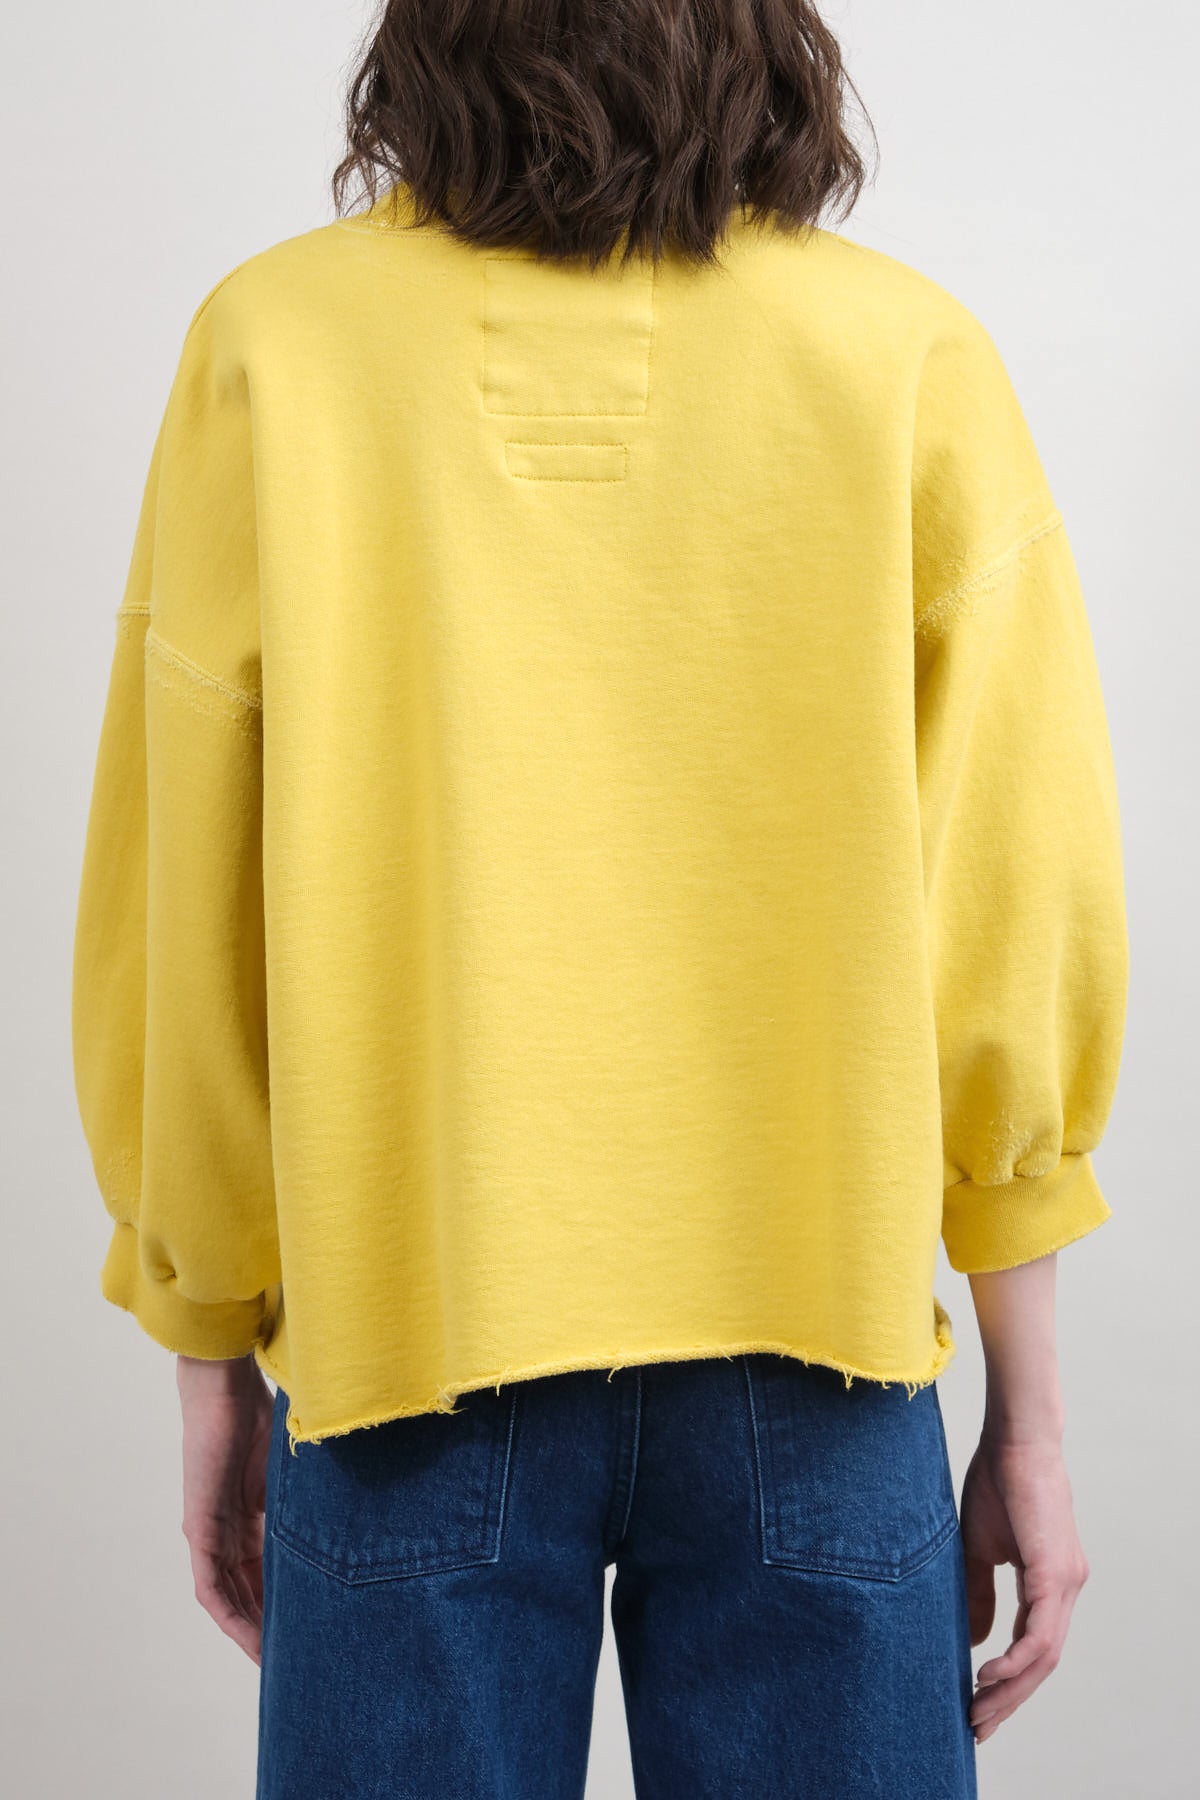 yellow sweatshirt Rachel Comey